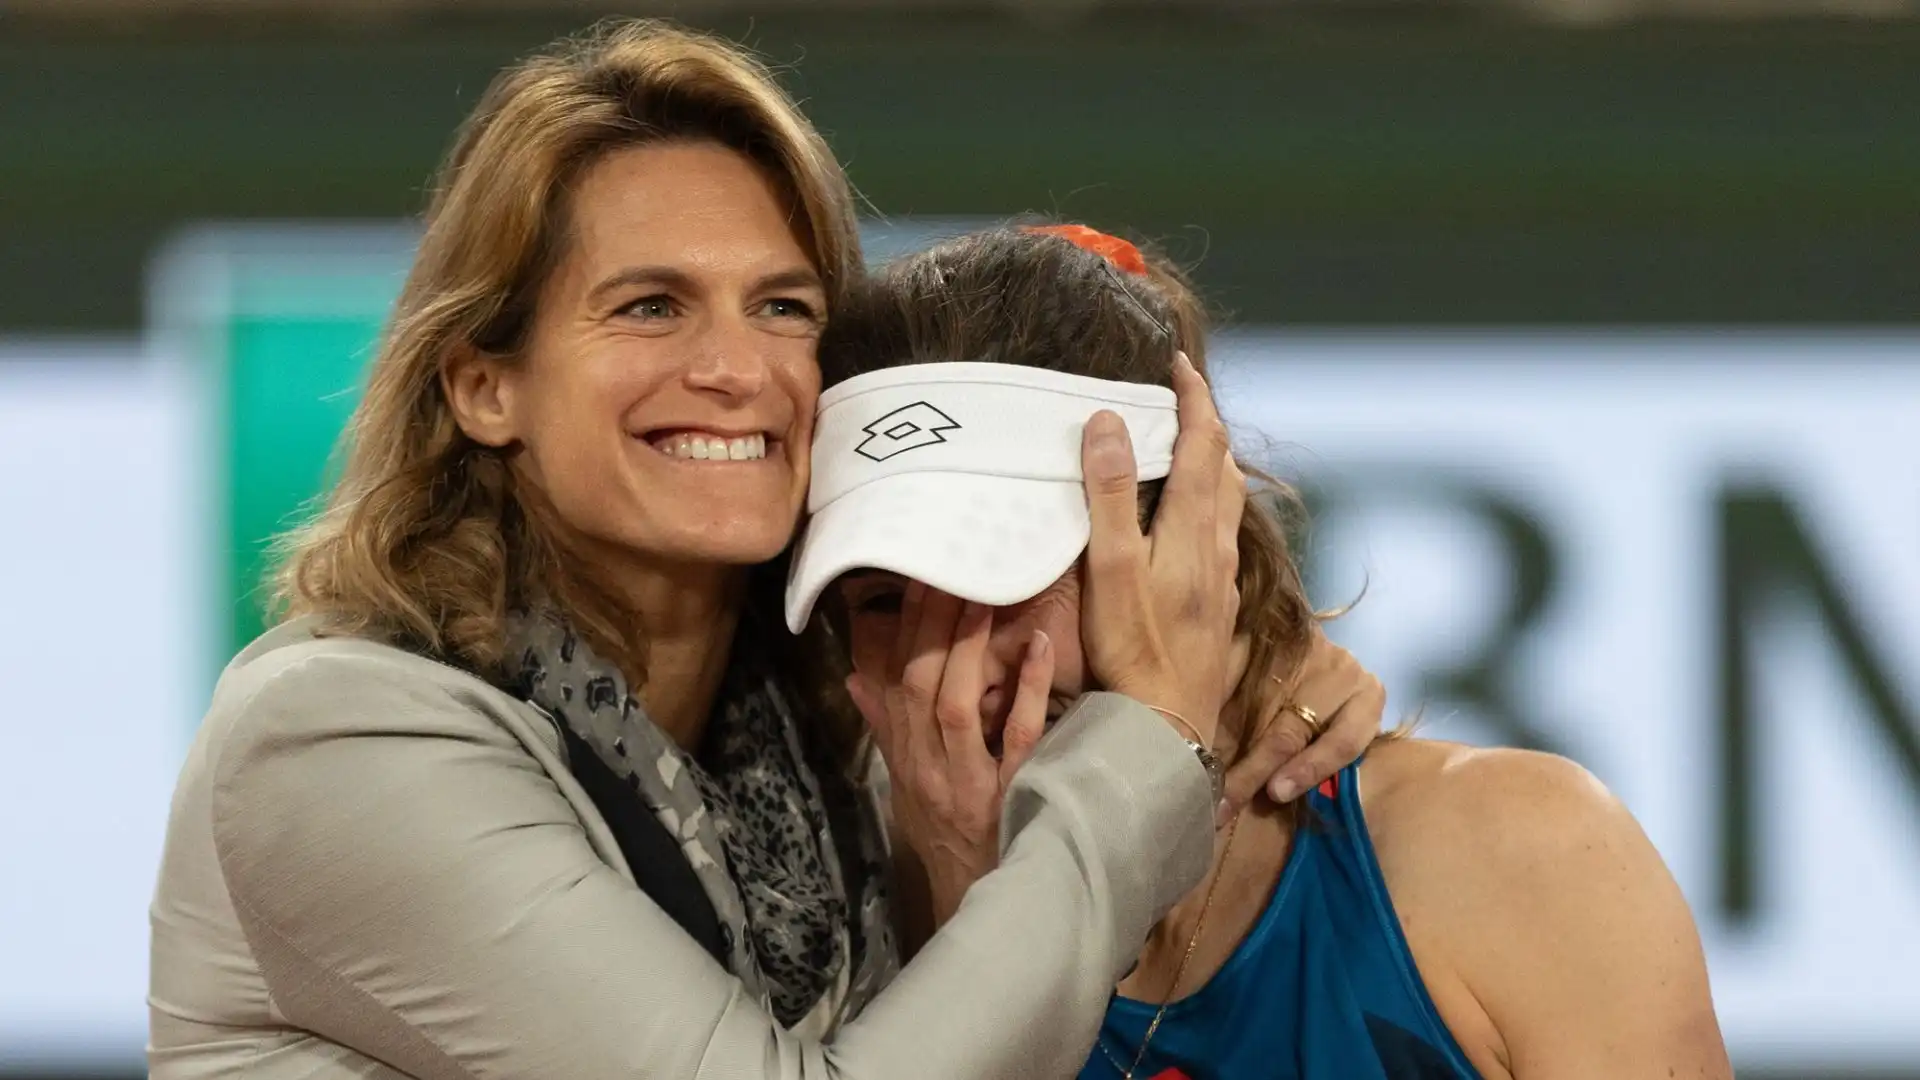 Molto commossa, Alize Cornet è stata abbracciata dalla direttrice del torneo, Amelie Mauresmo